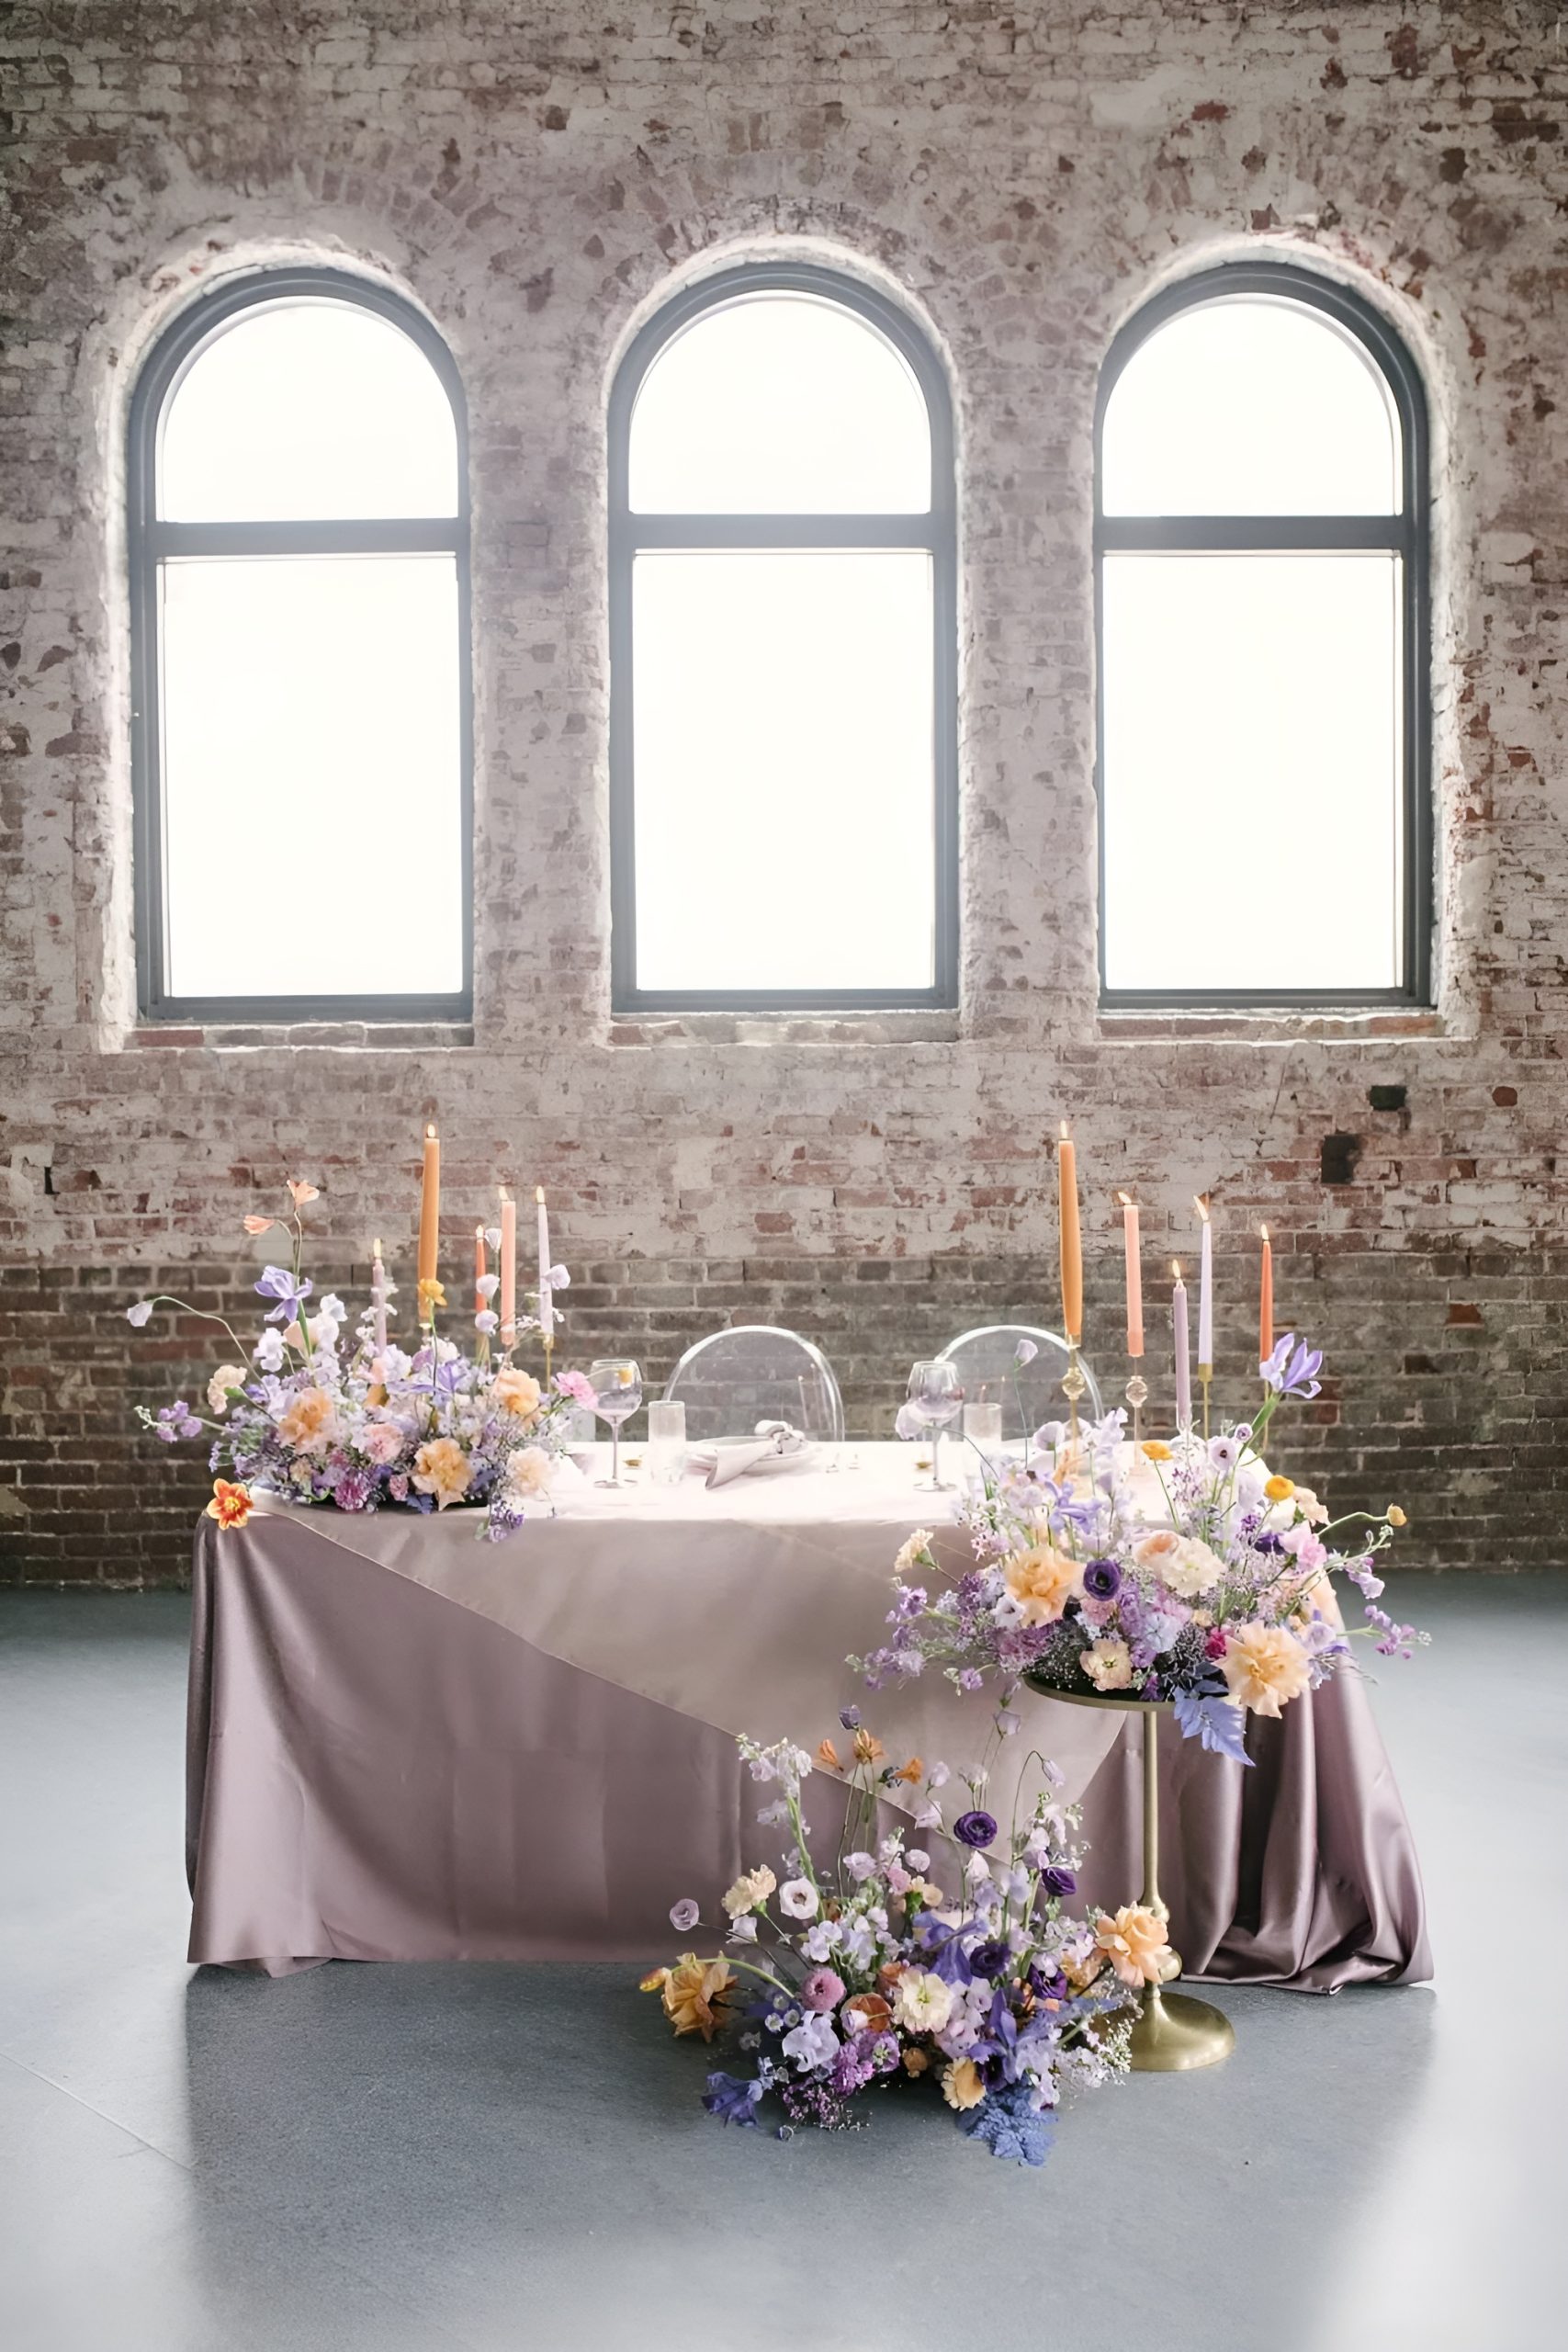 Sweetheart Table Flowers: Wedding